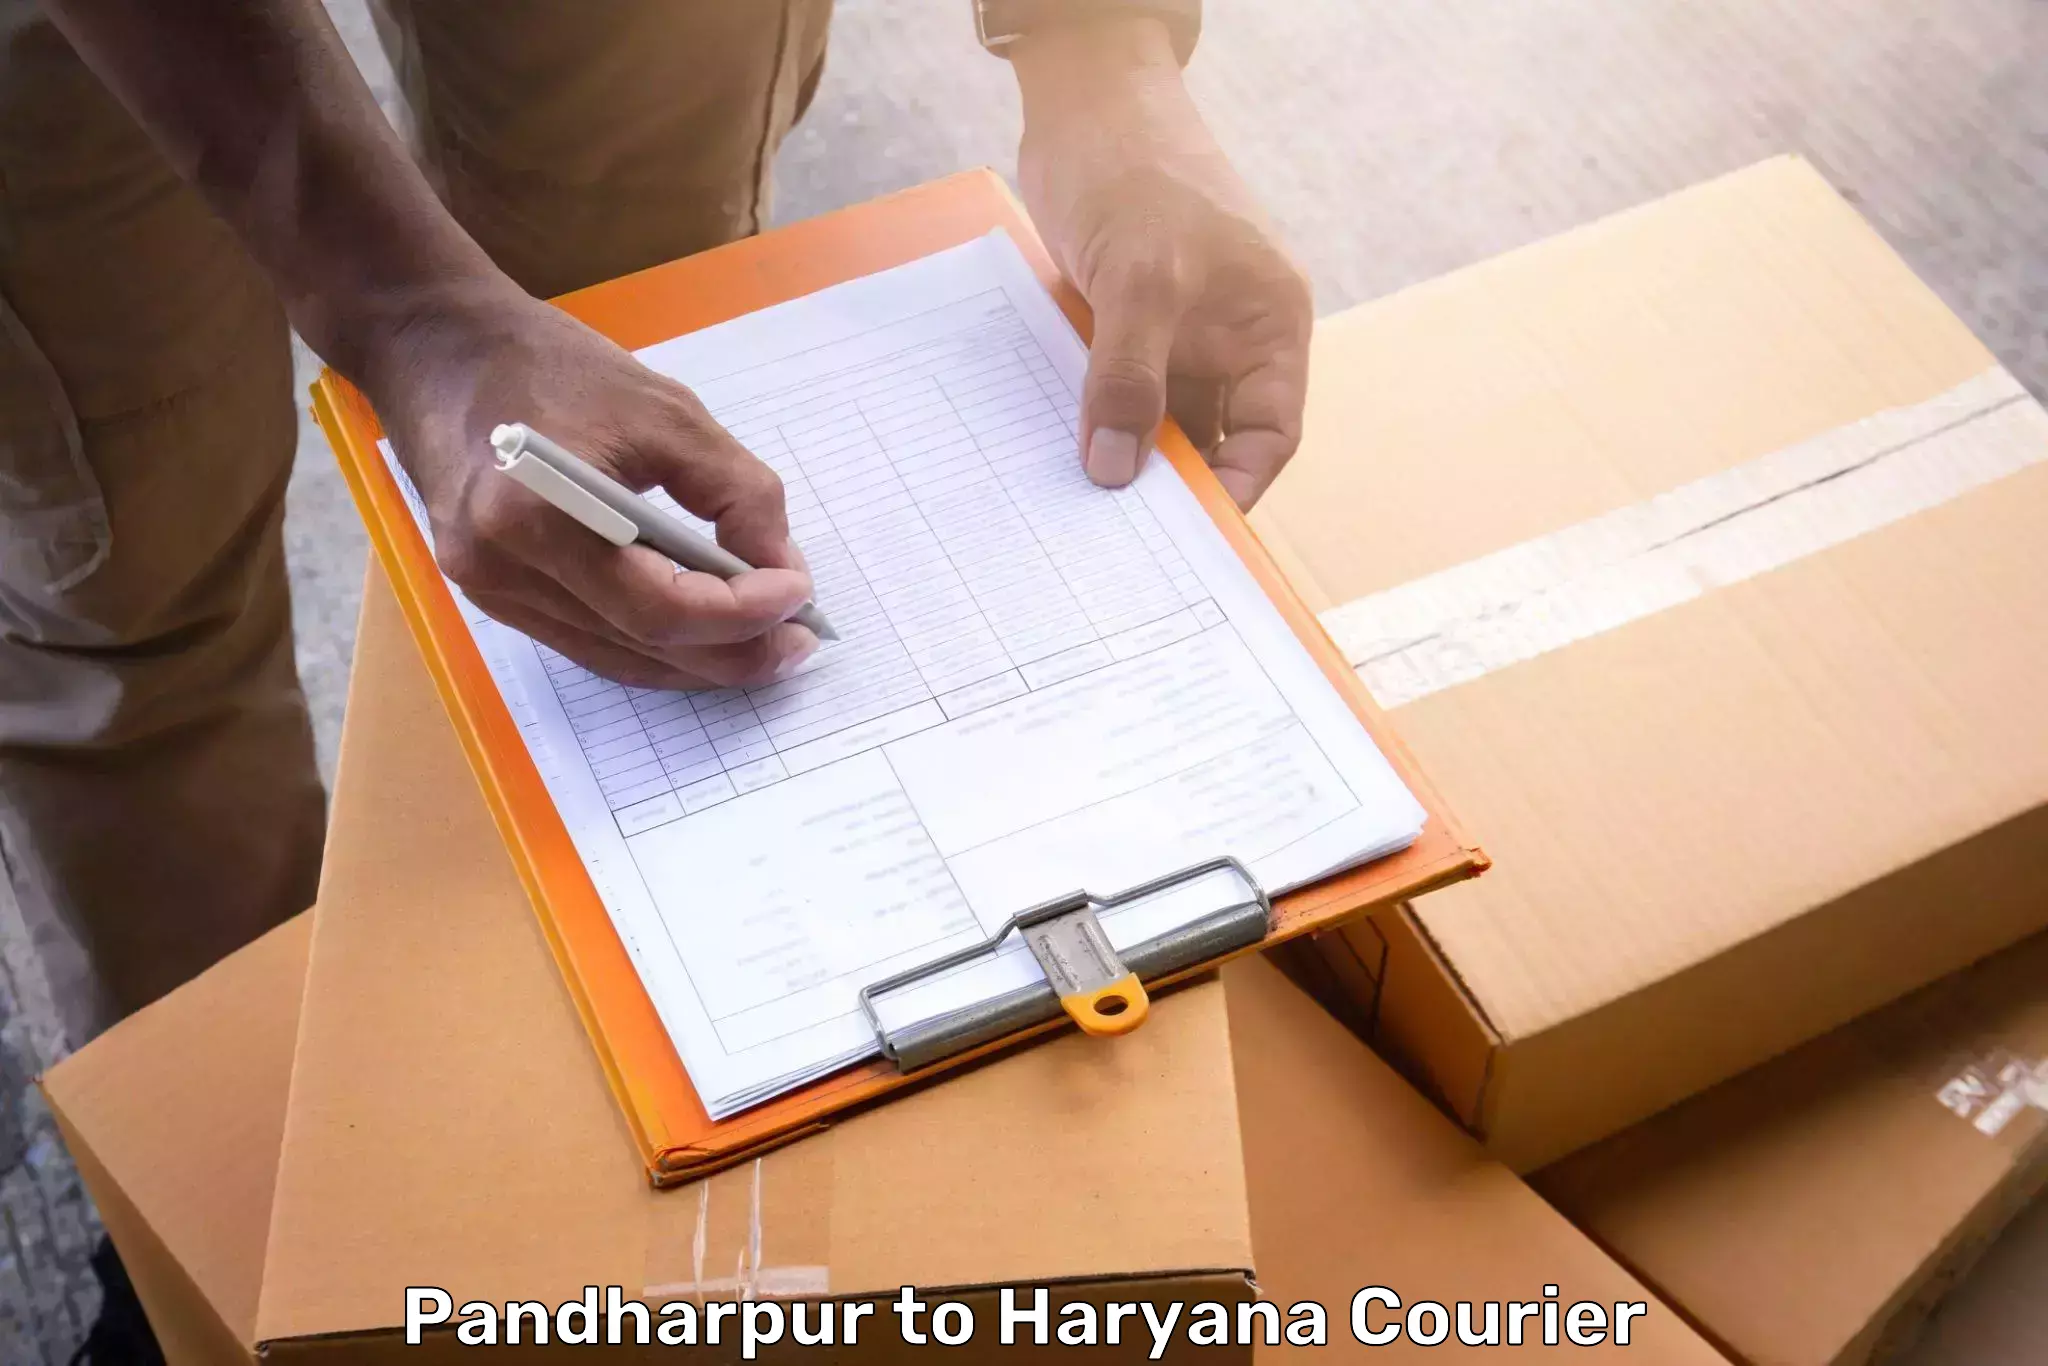 Baggage shipping optimization Pandharpur to IIIT Sonepat